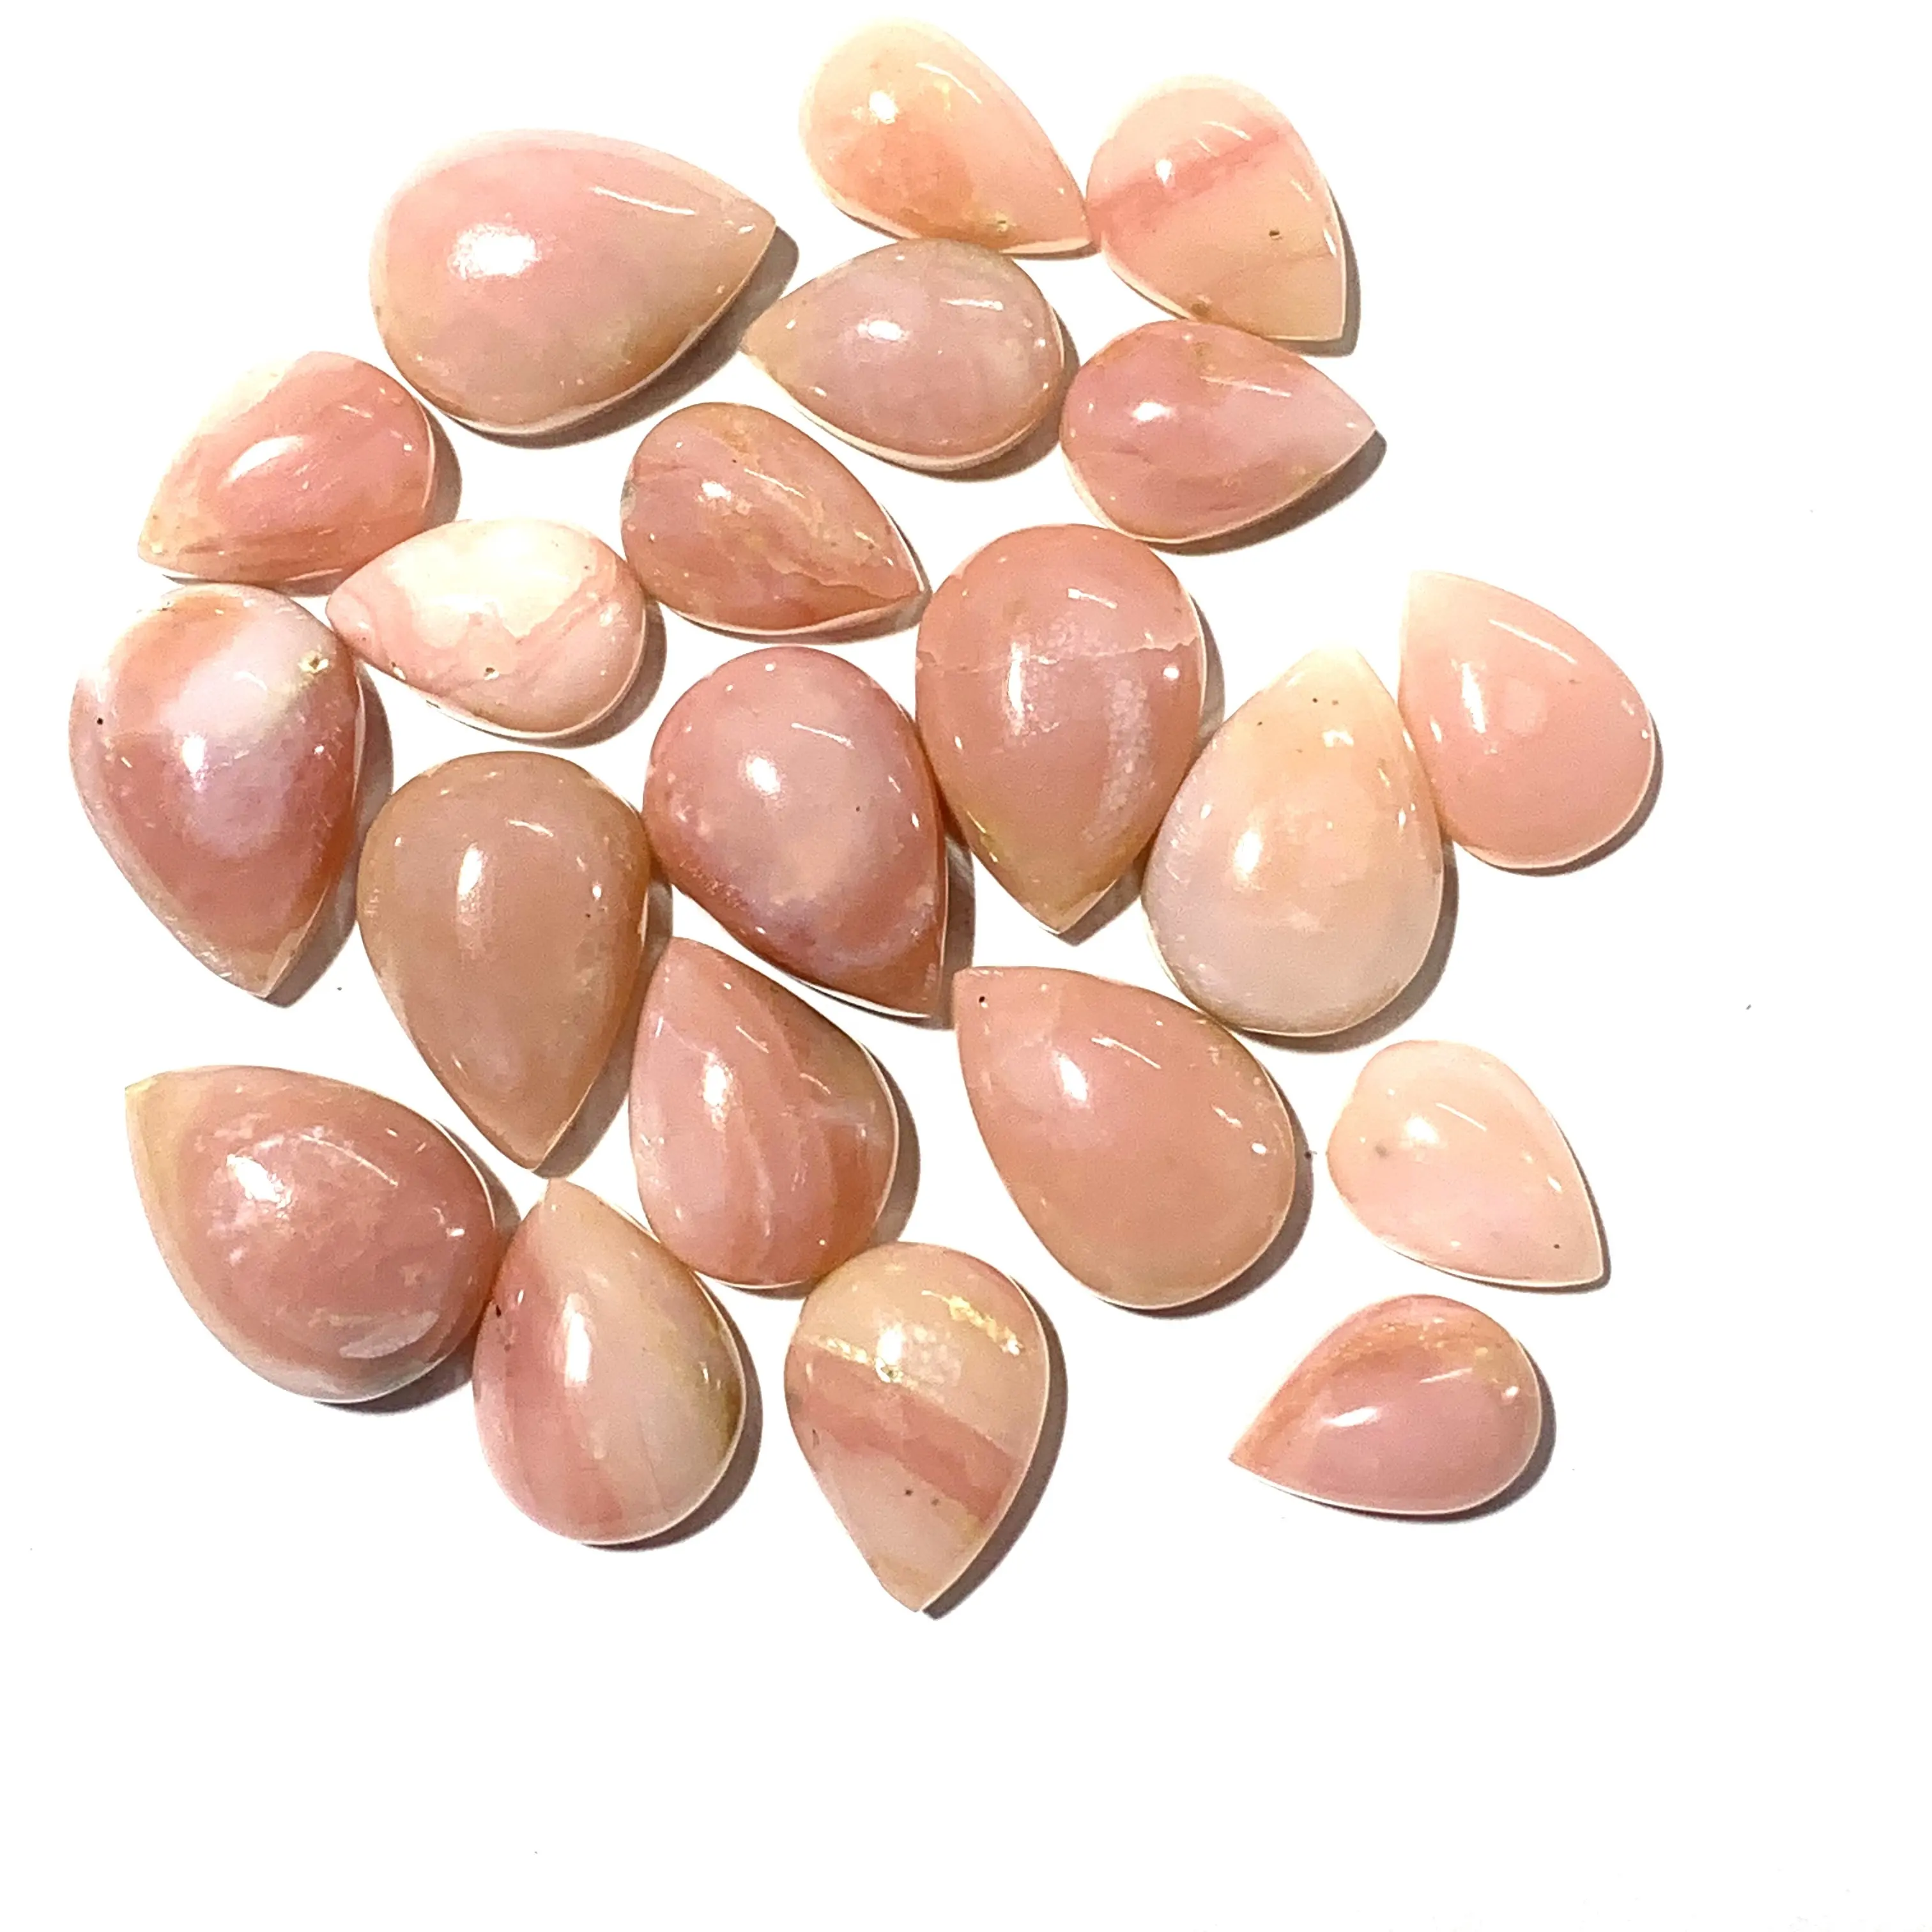 Opala rosa de alta qualidade, pedra natural solta, joia com pedras preciosas em forma de pêra, pedras misturadas, pedra preciosa natural, opala rosa